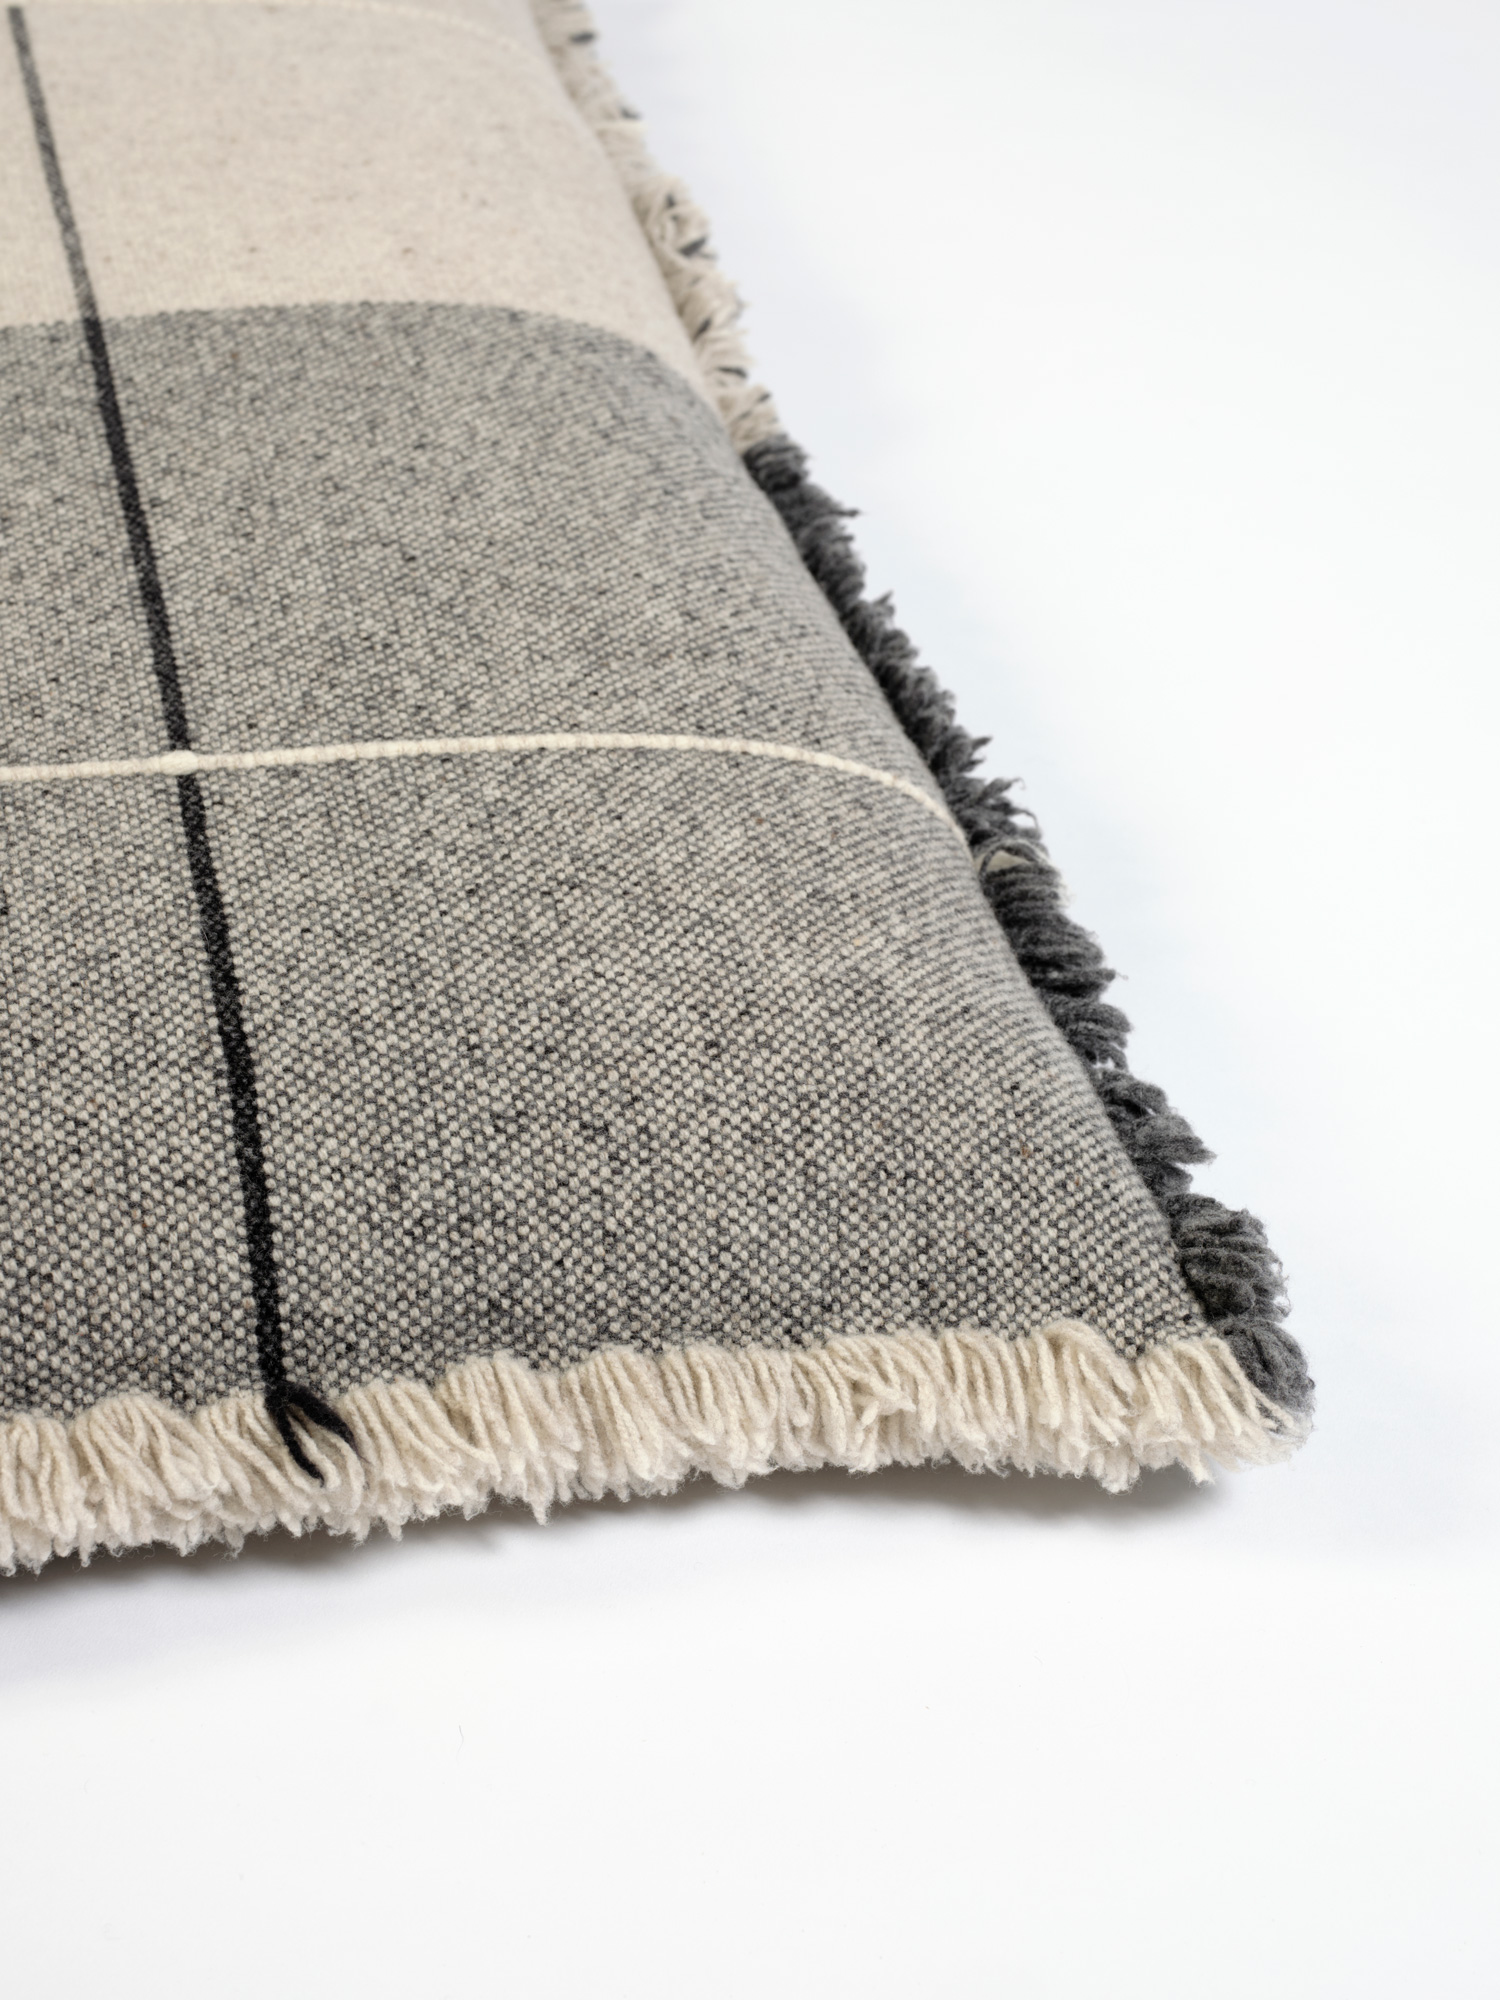 Cojín de suelo en lana merino en cuadros grises oscuros y claros